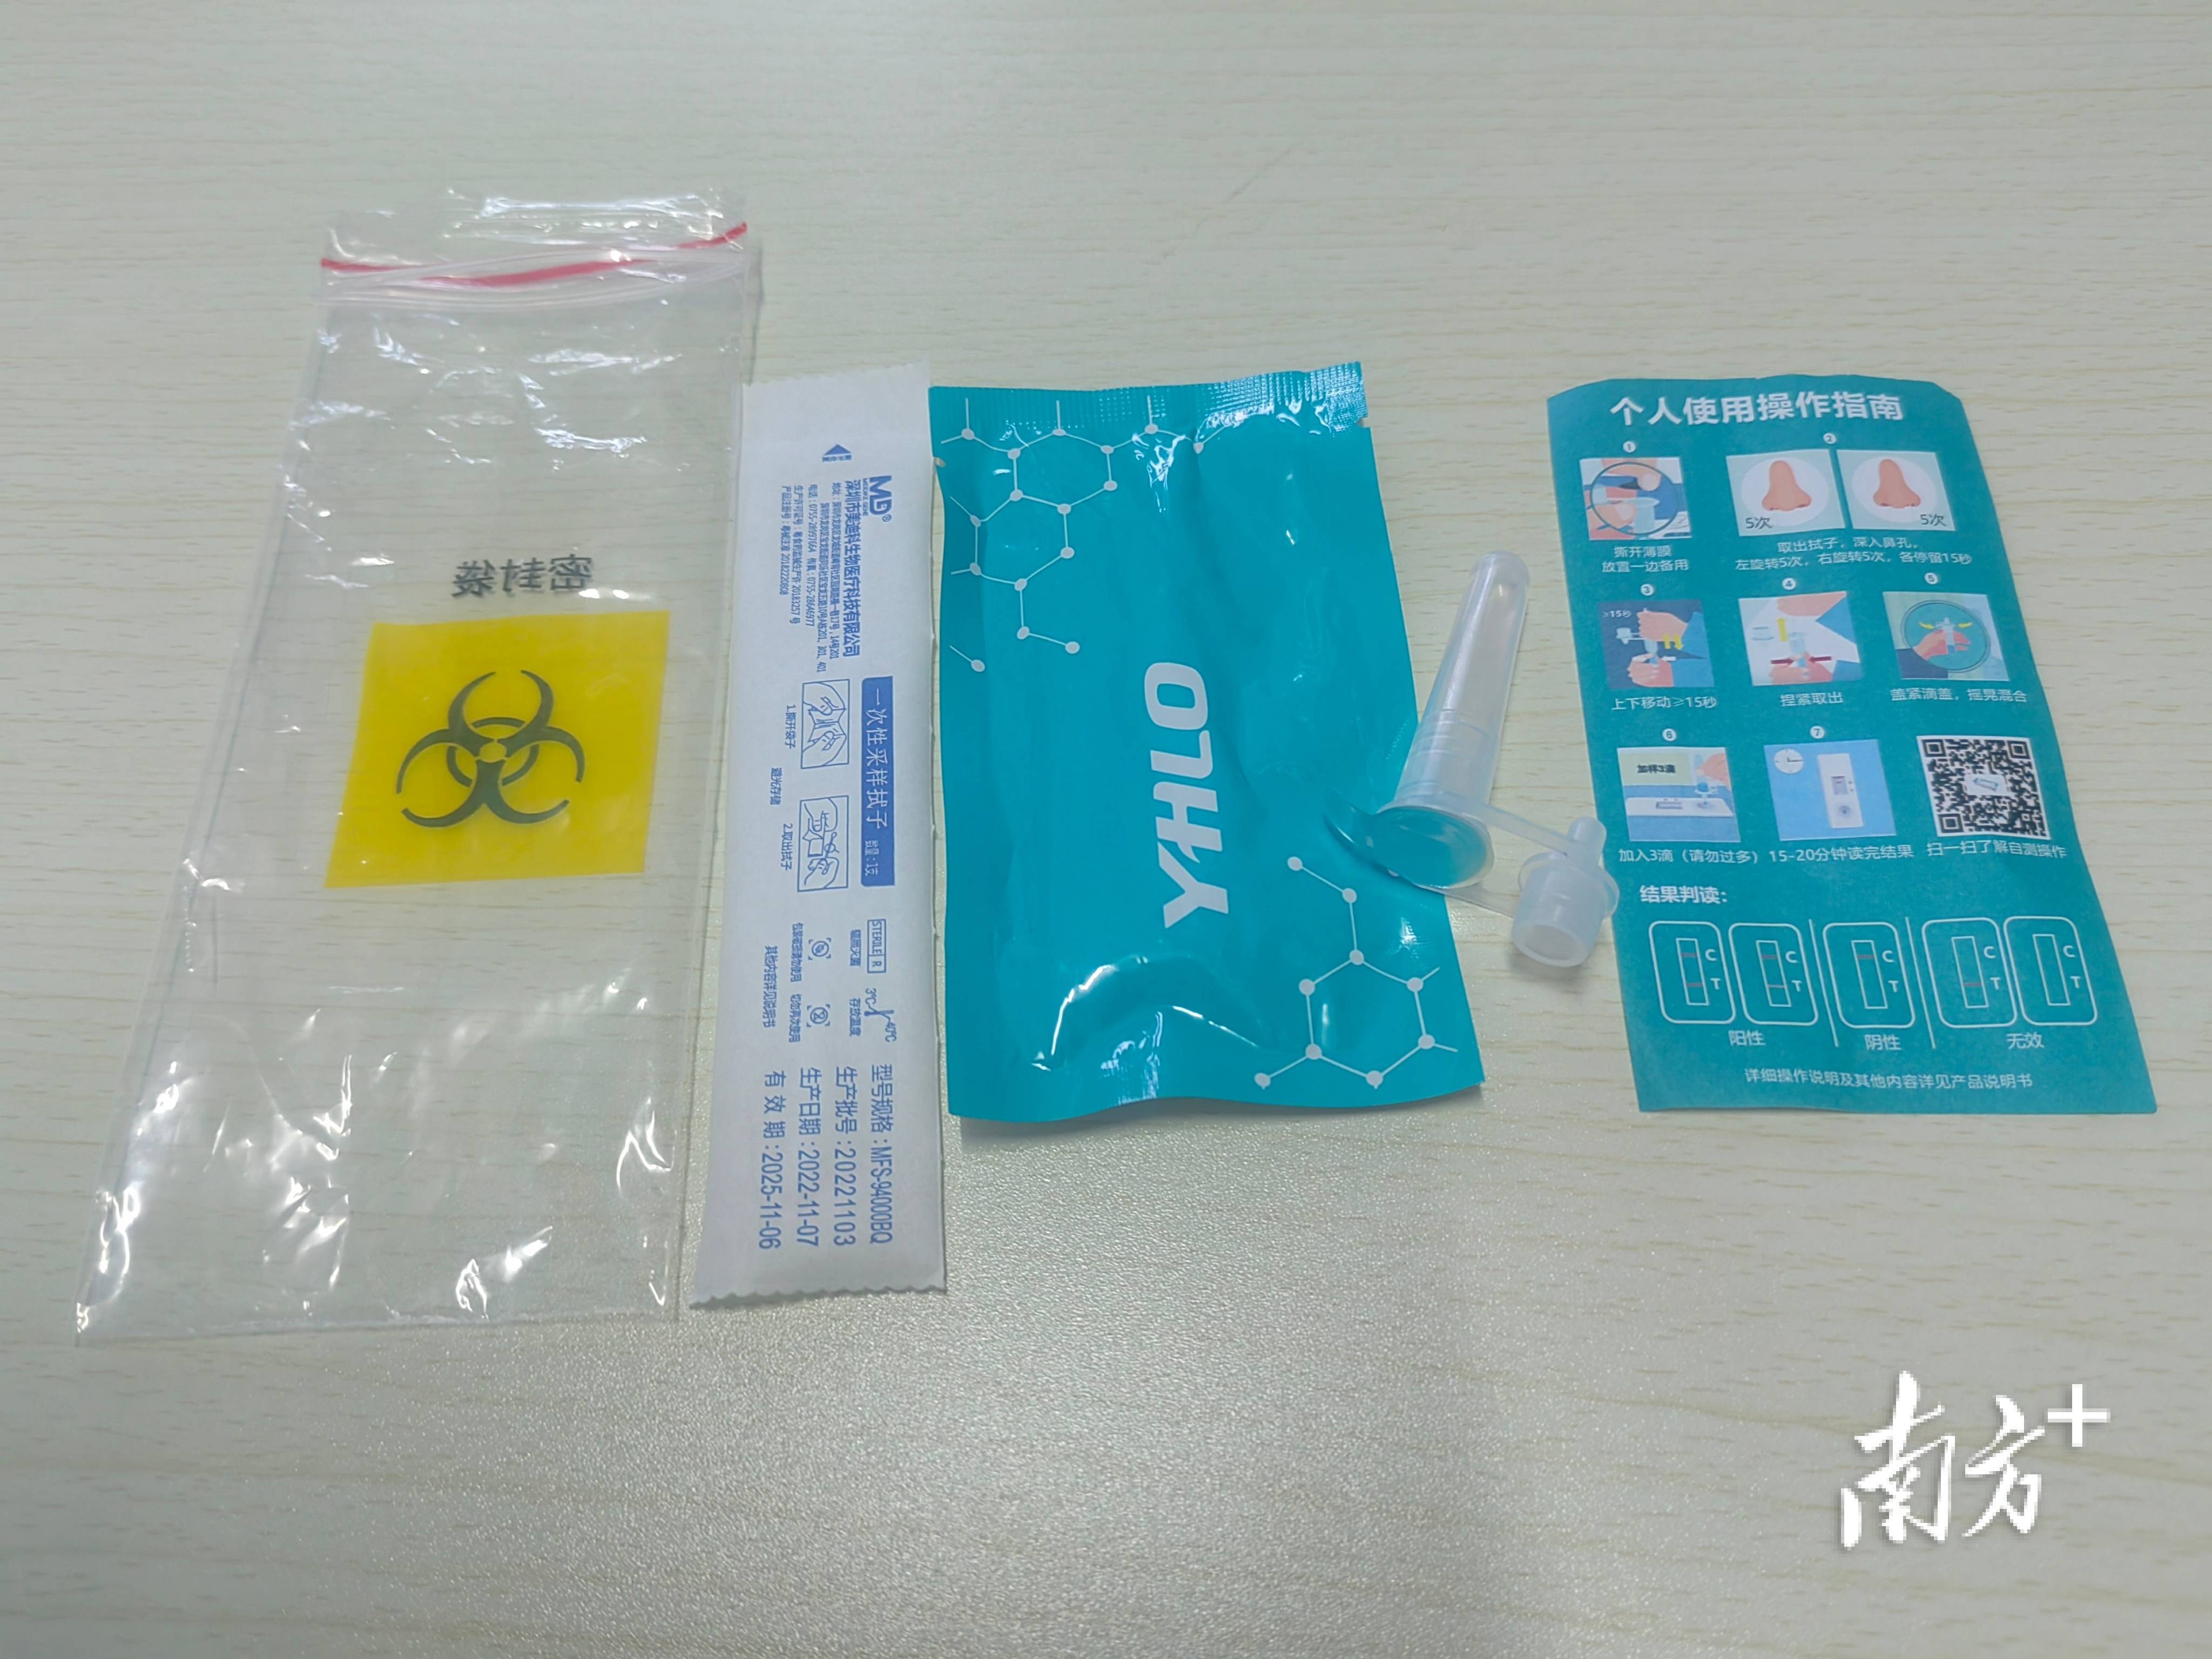 抗原检测试剂盒、抗病毒药物储备如何？记者探访了广州40家药店